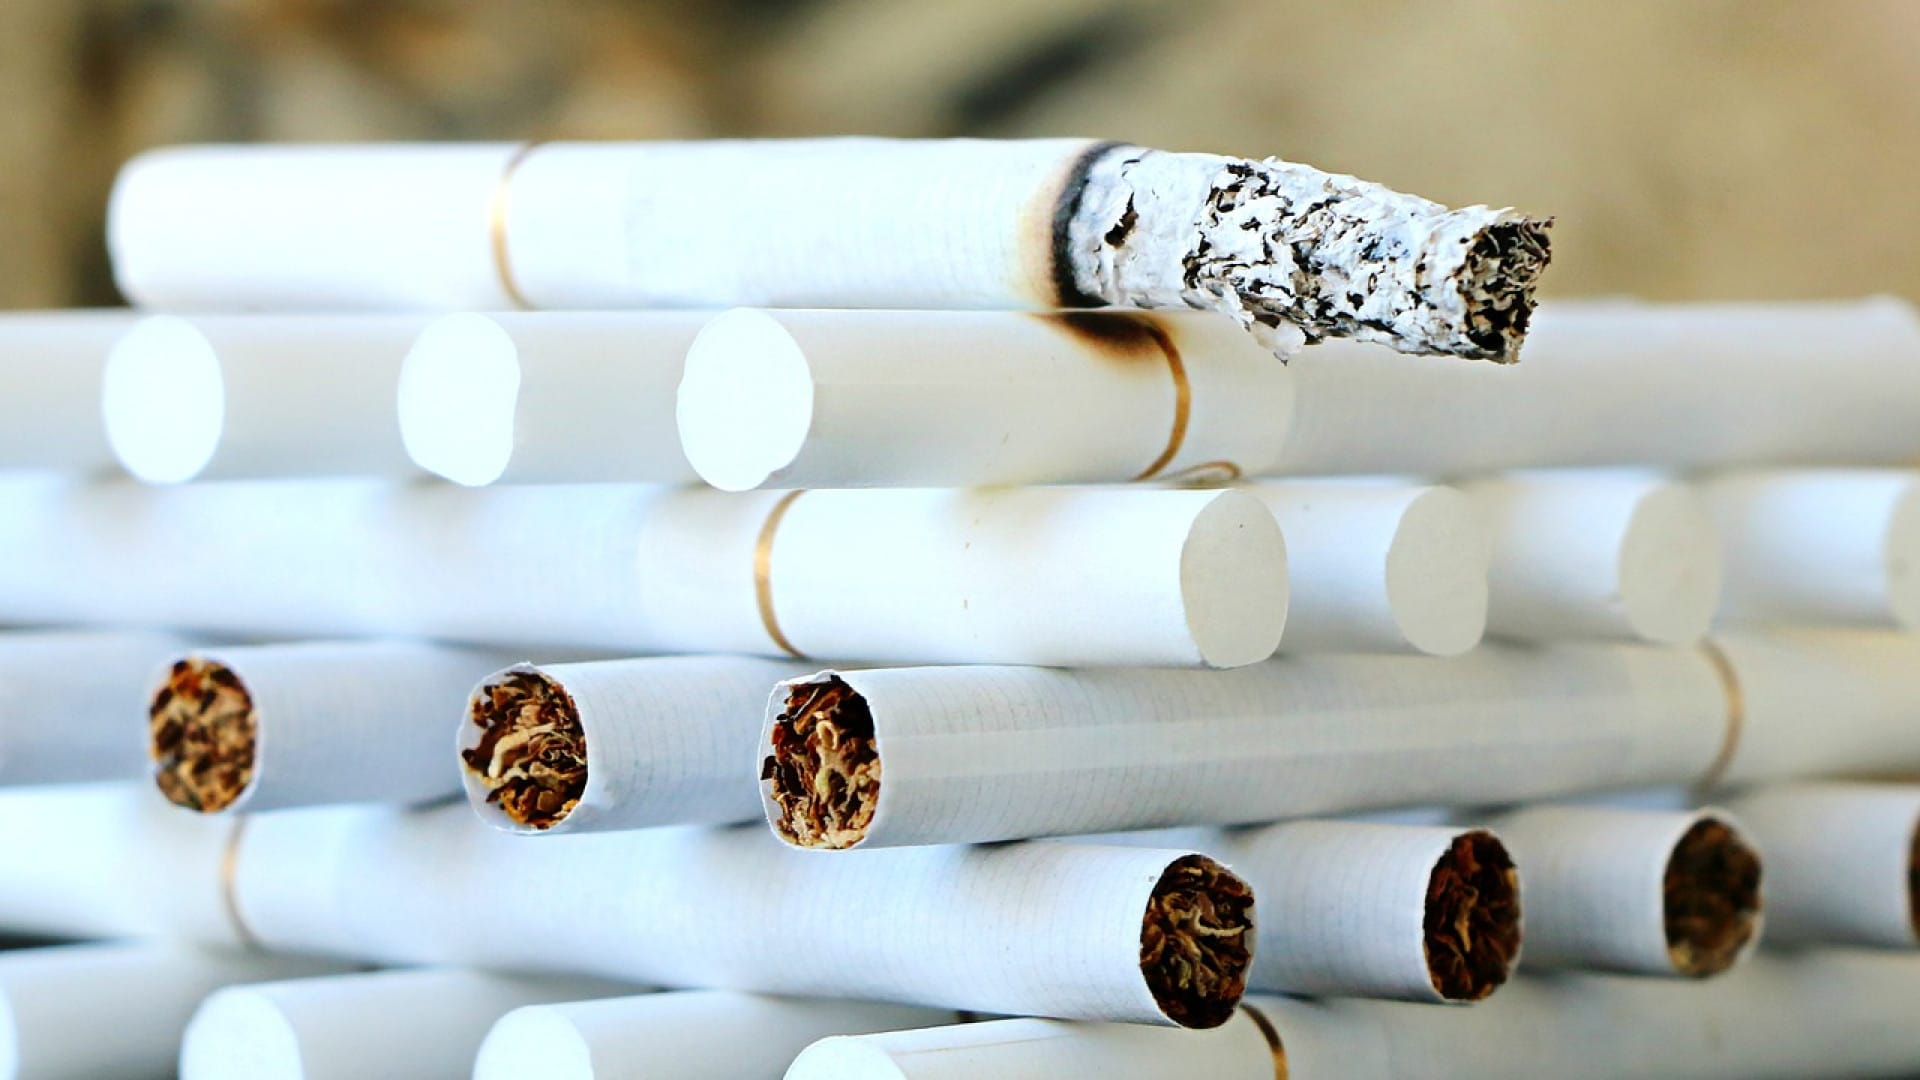 Pourquoi suivre des blogs sur le sevrage tabac ?